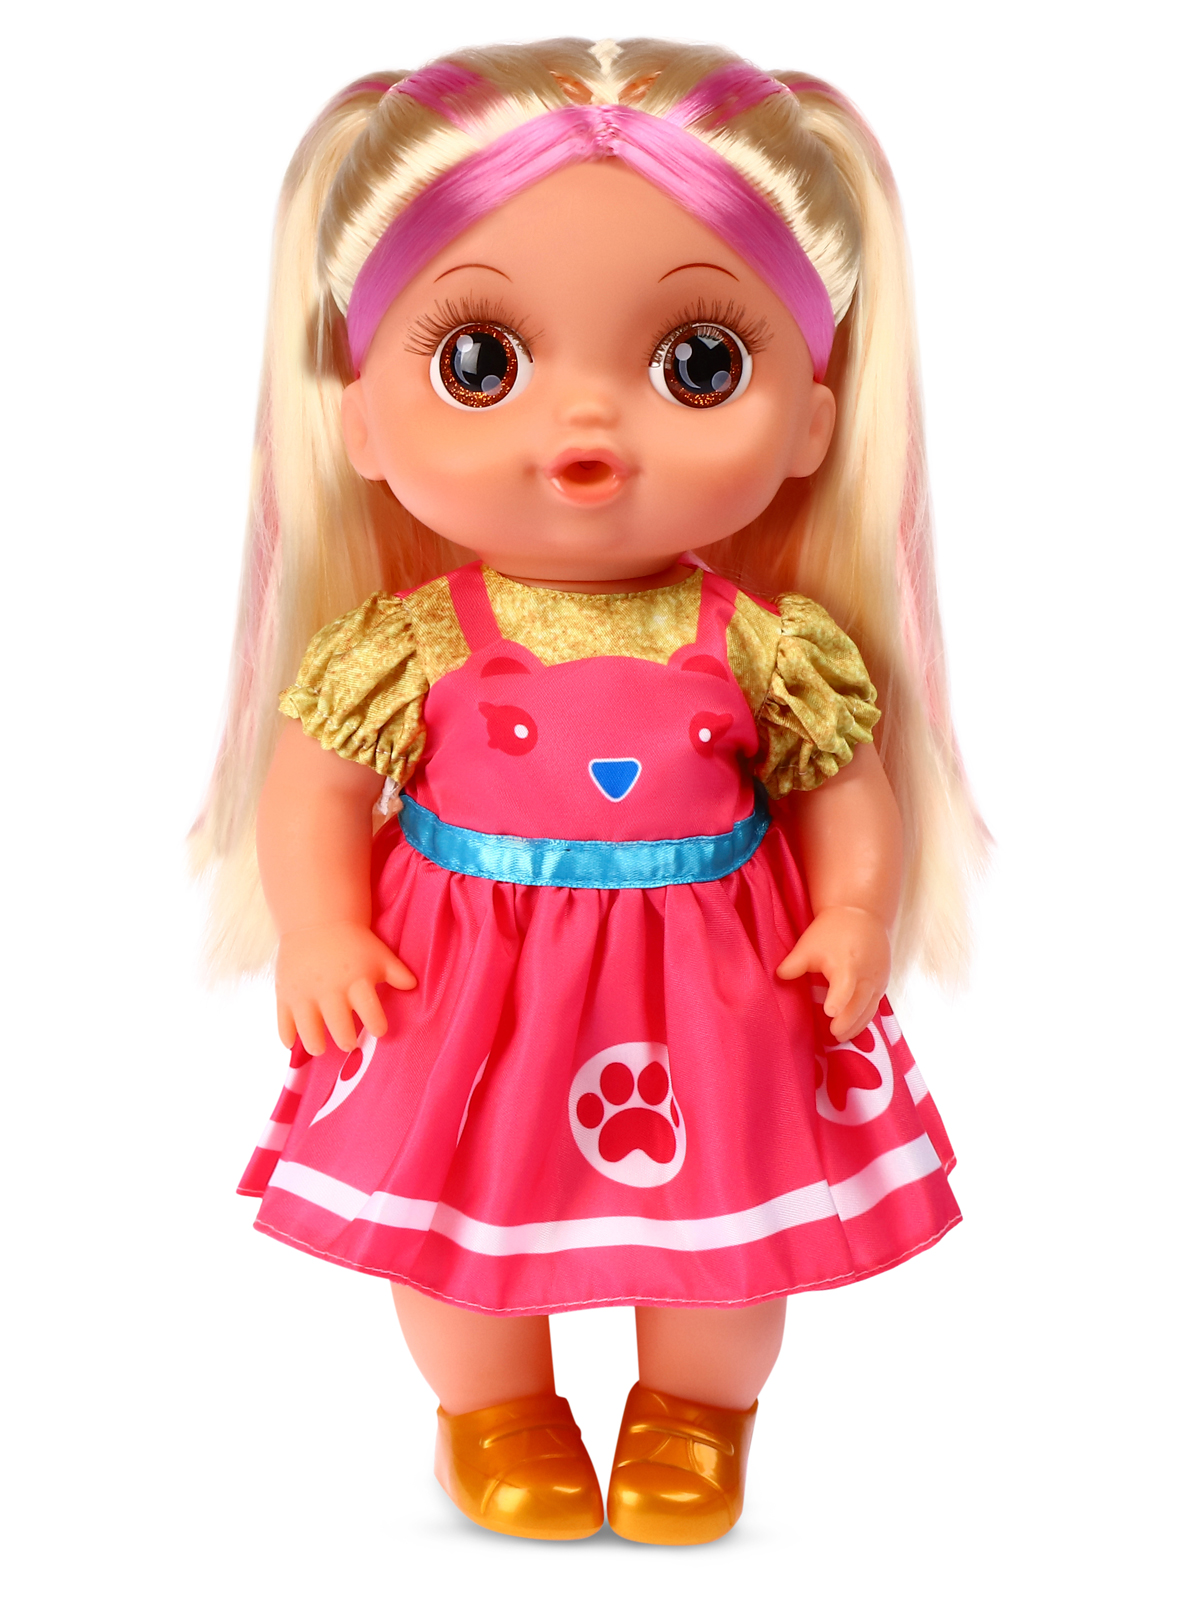 Кукла AMORE BELLO С розовыми волосами бутылочка желтый горшок соска JB0211646 - фото 10